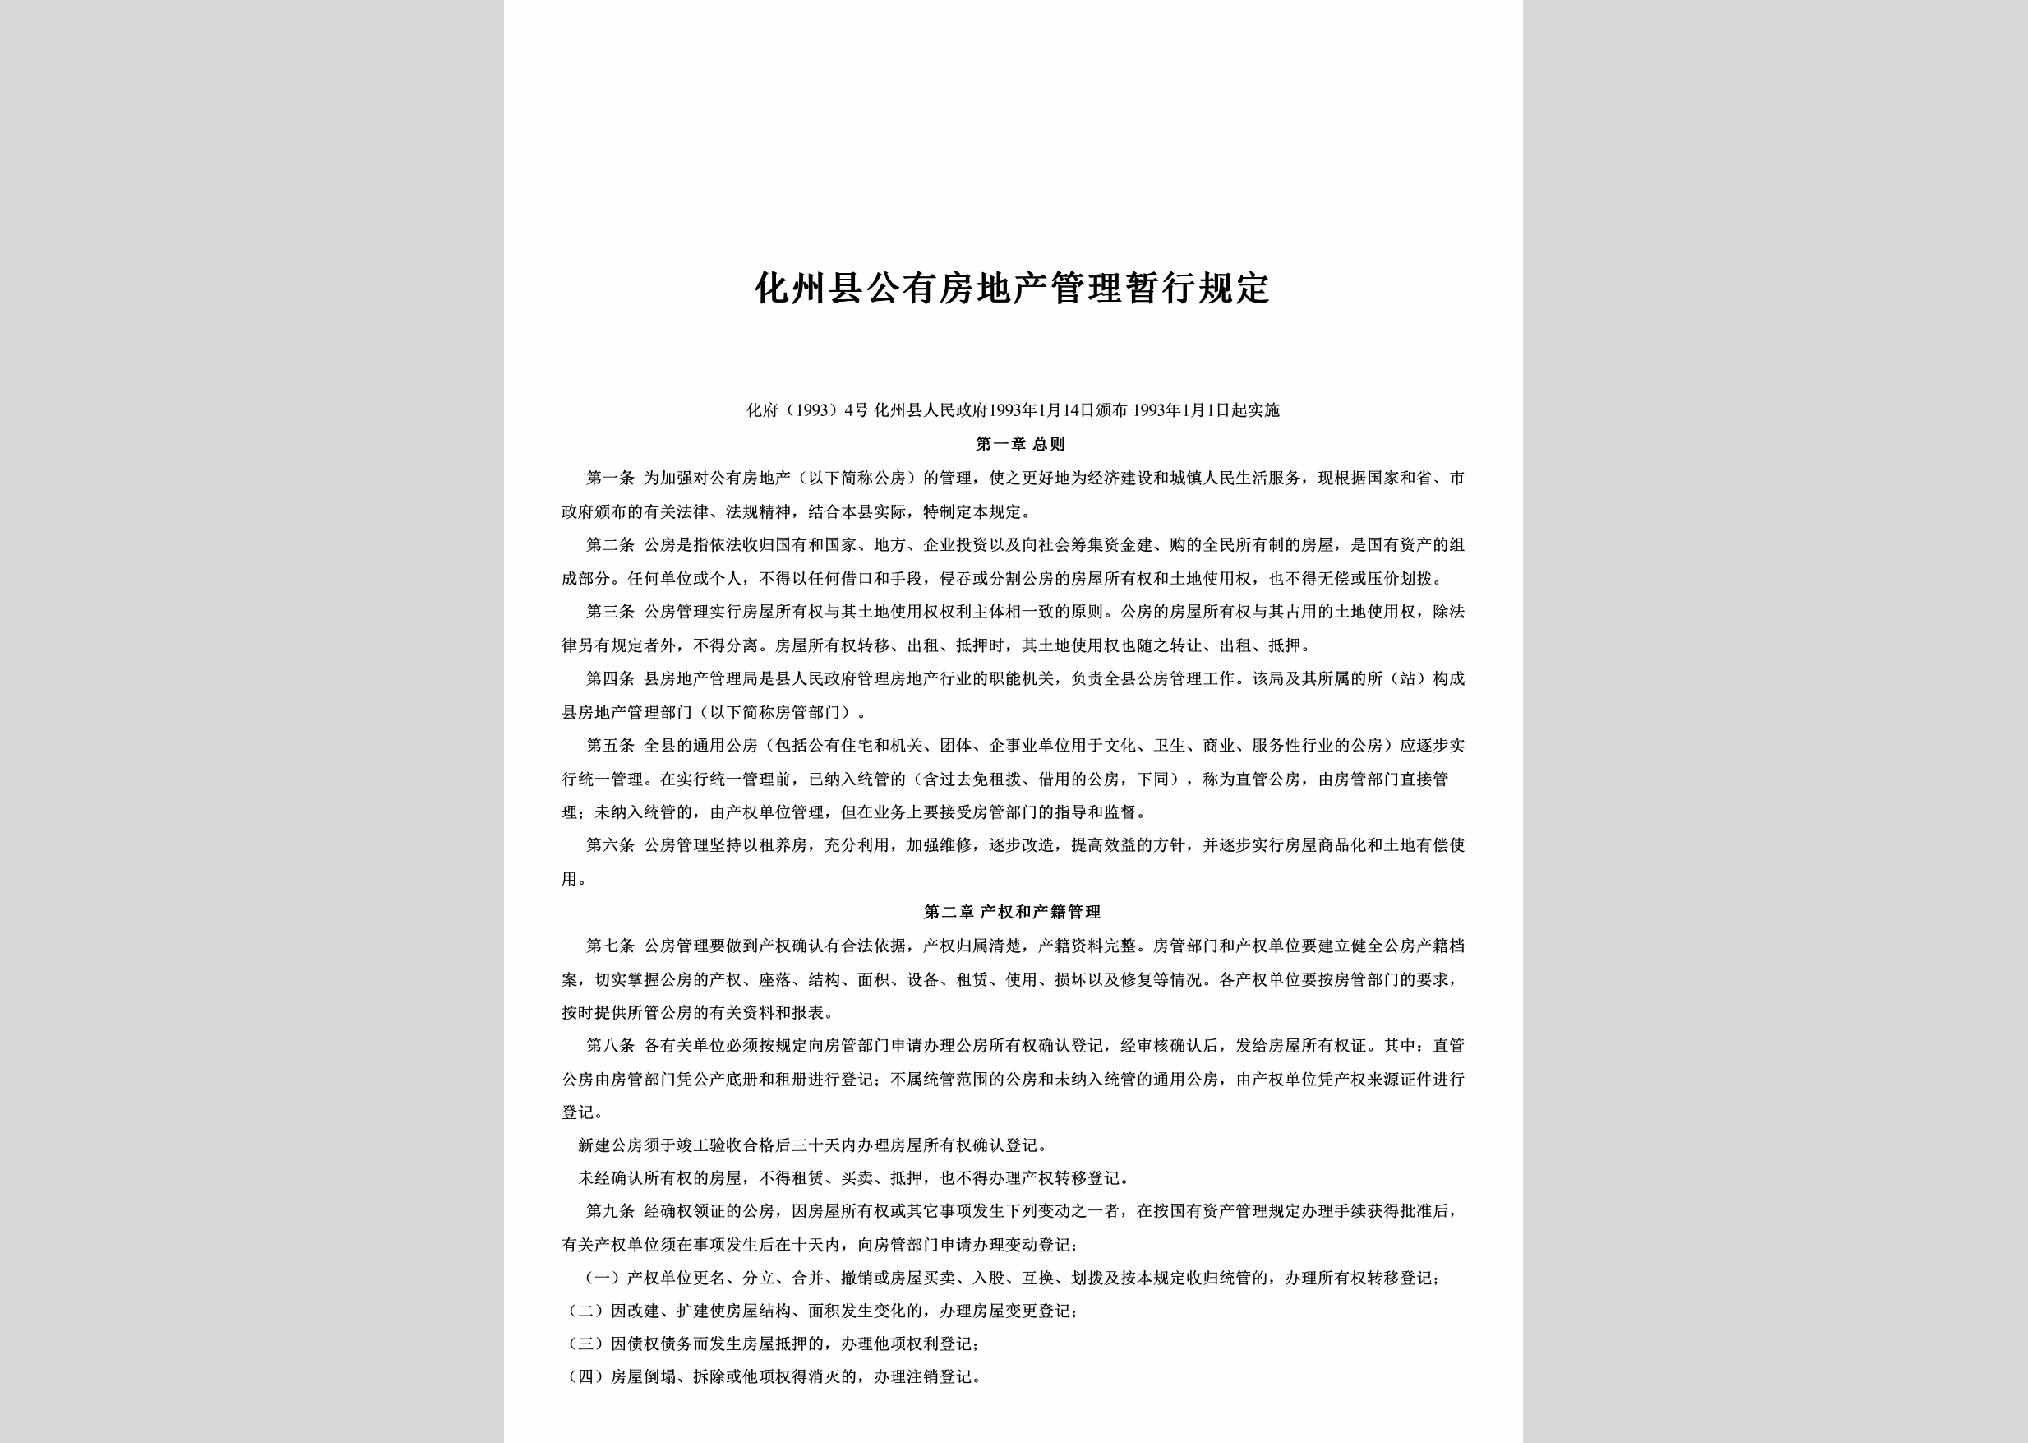 化府[1993]4号：化州县公有房地产管理暂行规定